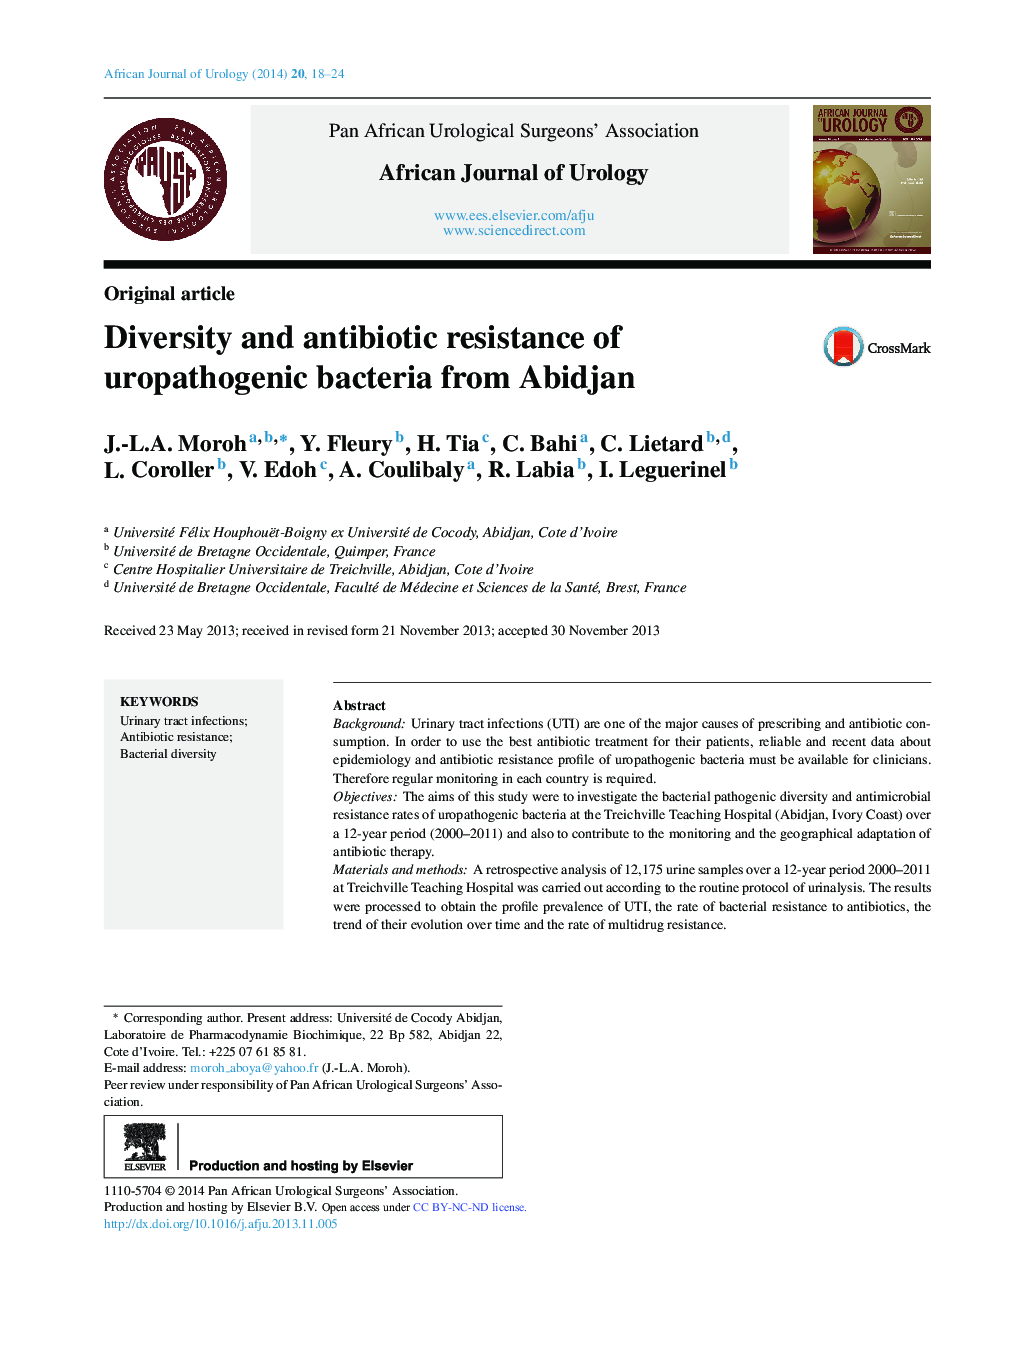 تنوع و مقاومت آنتی بیوتیک باکتری های بیماری زا از آبیدان 